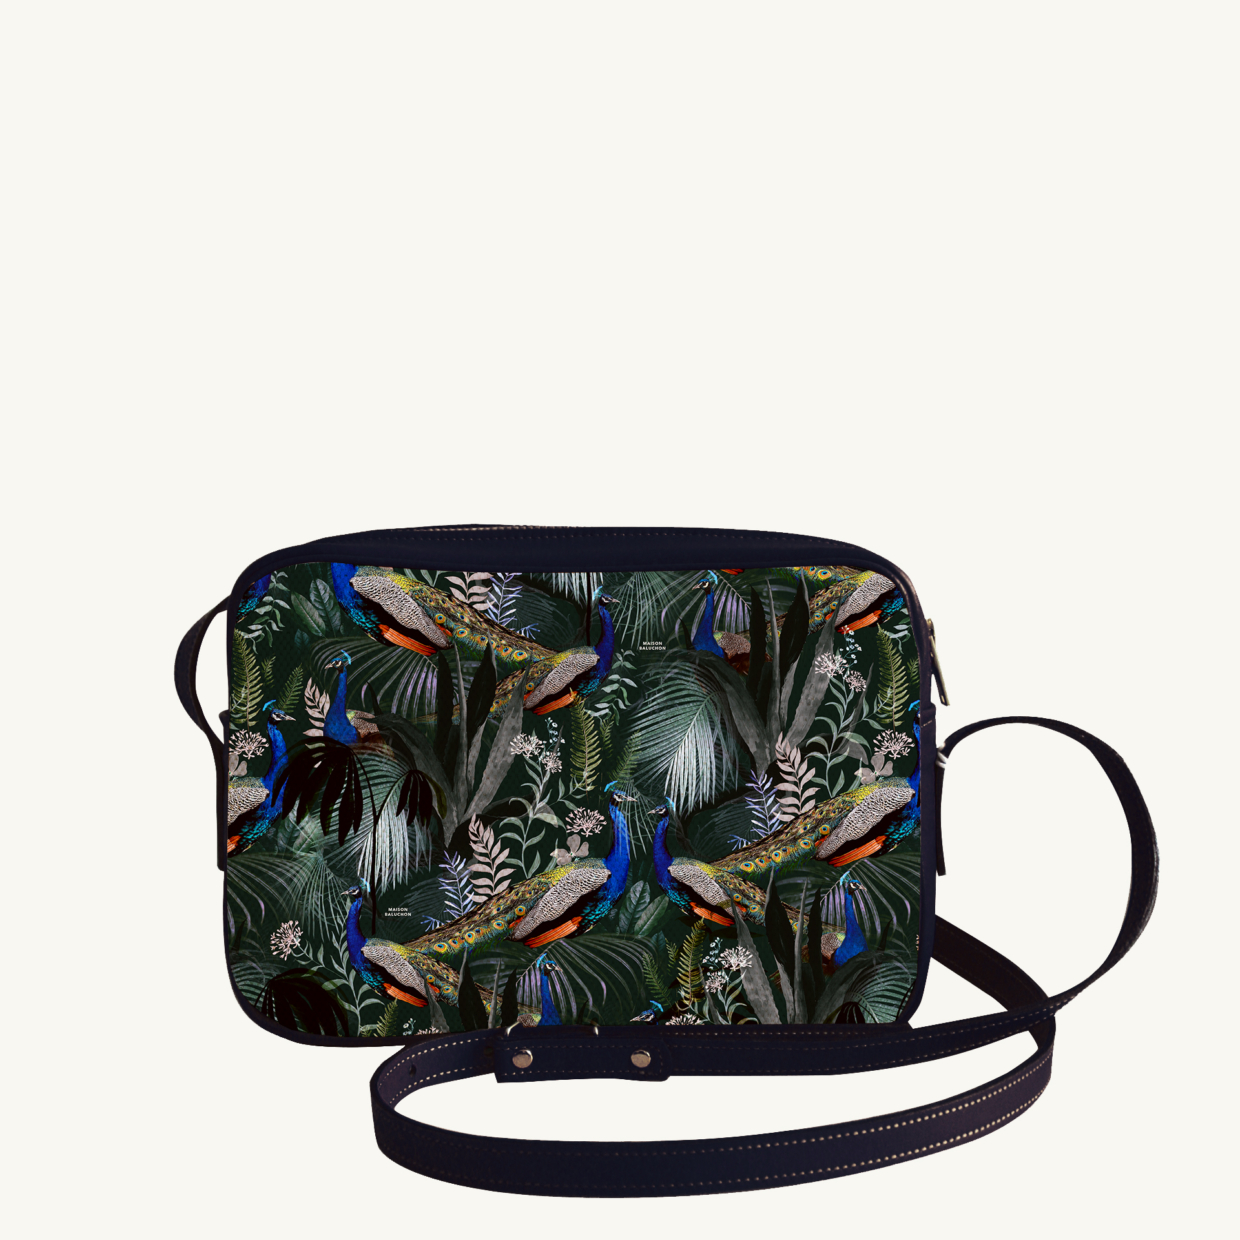 Crossbody bi-material bag Jungle N°17 - Dark Blue leather